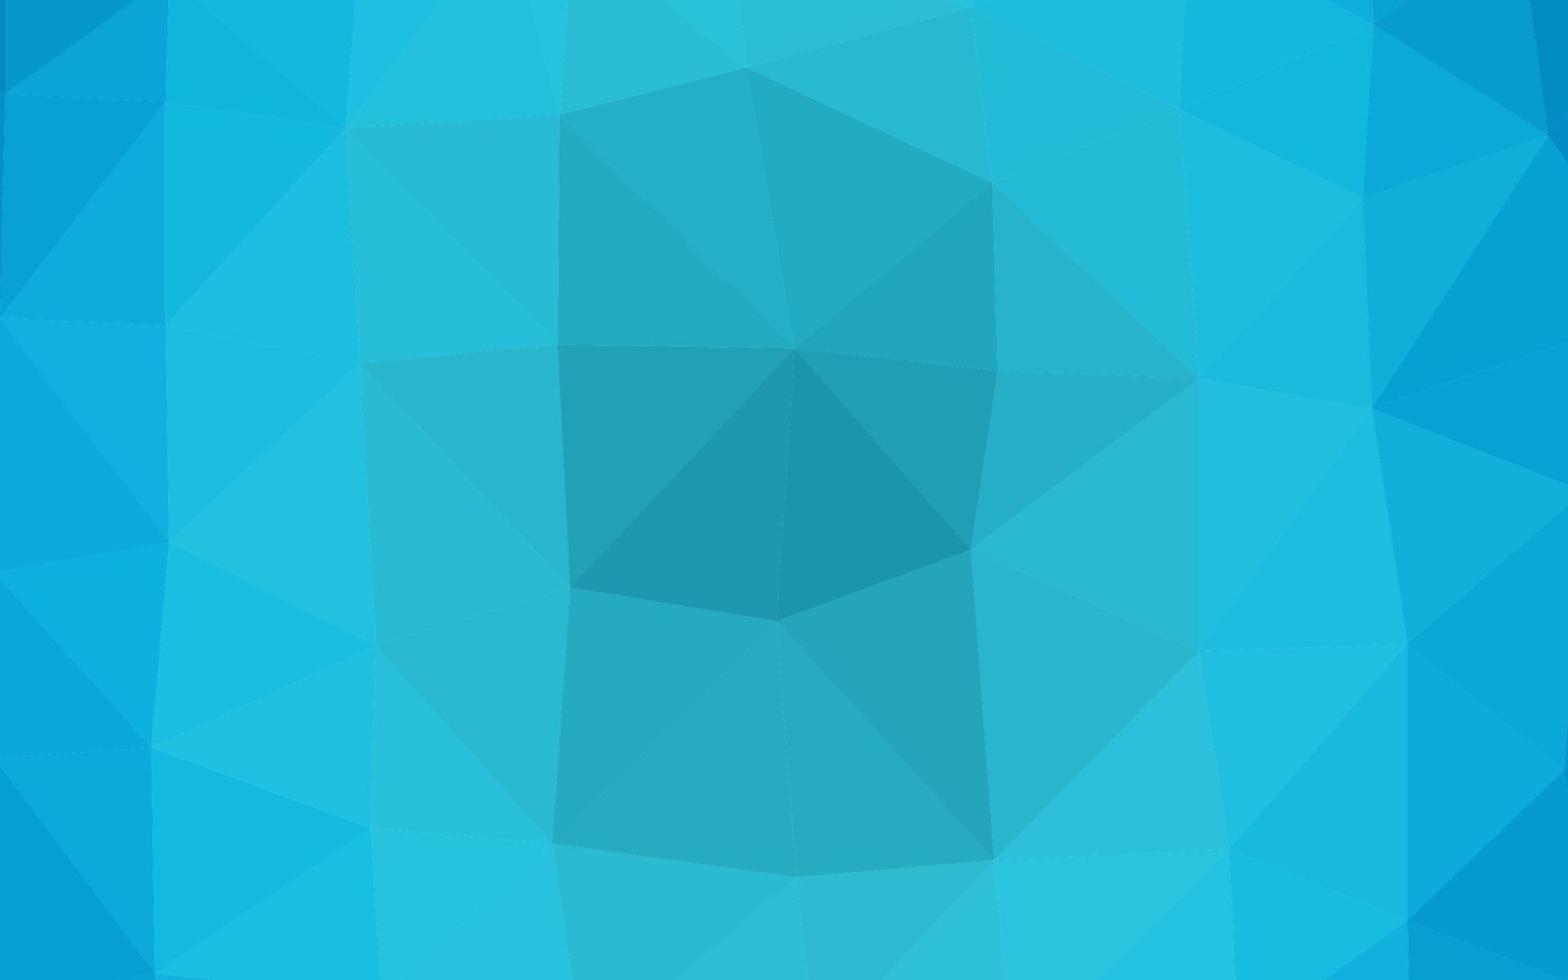 textura de triângulo embaçada de vetor azul claro.